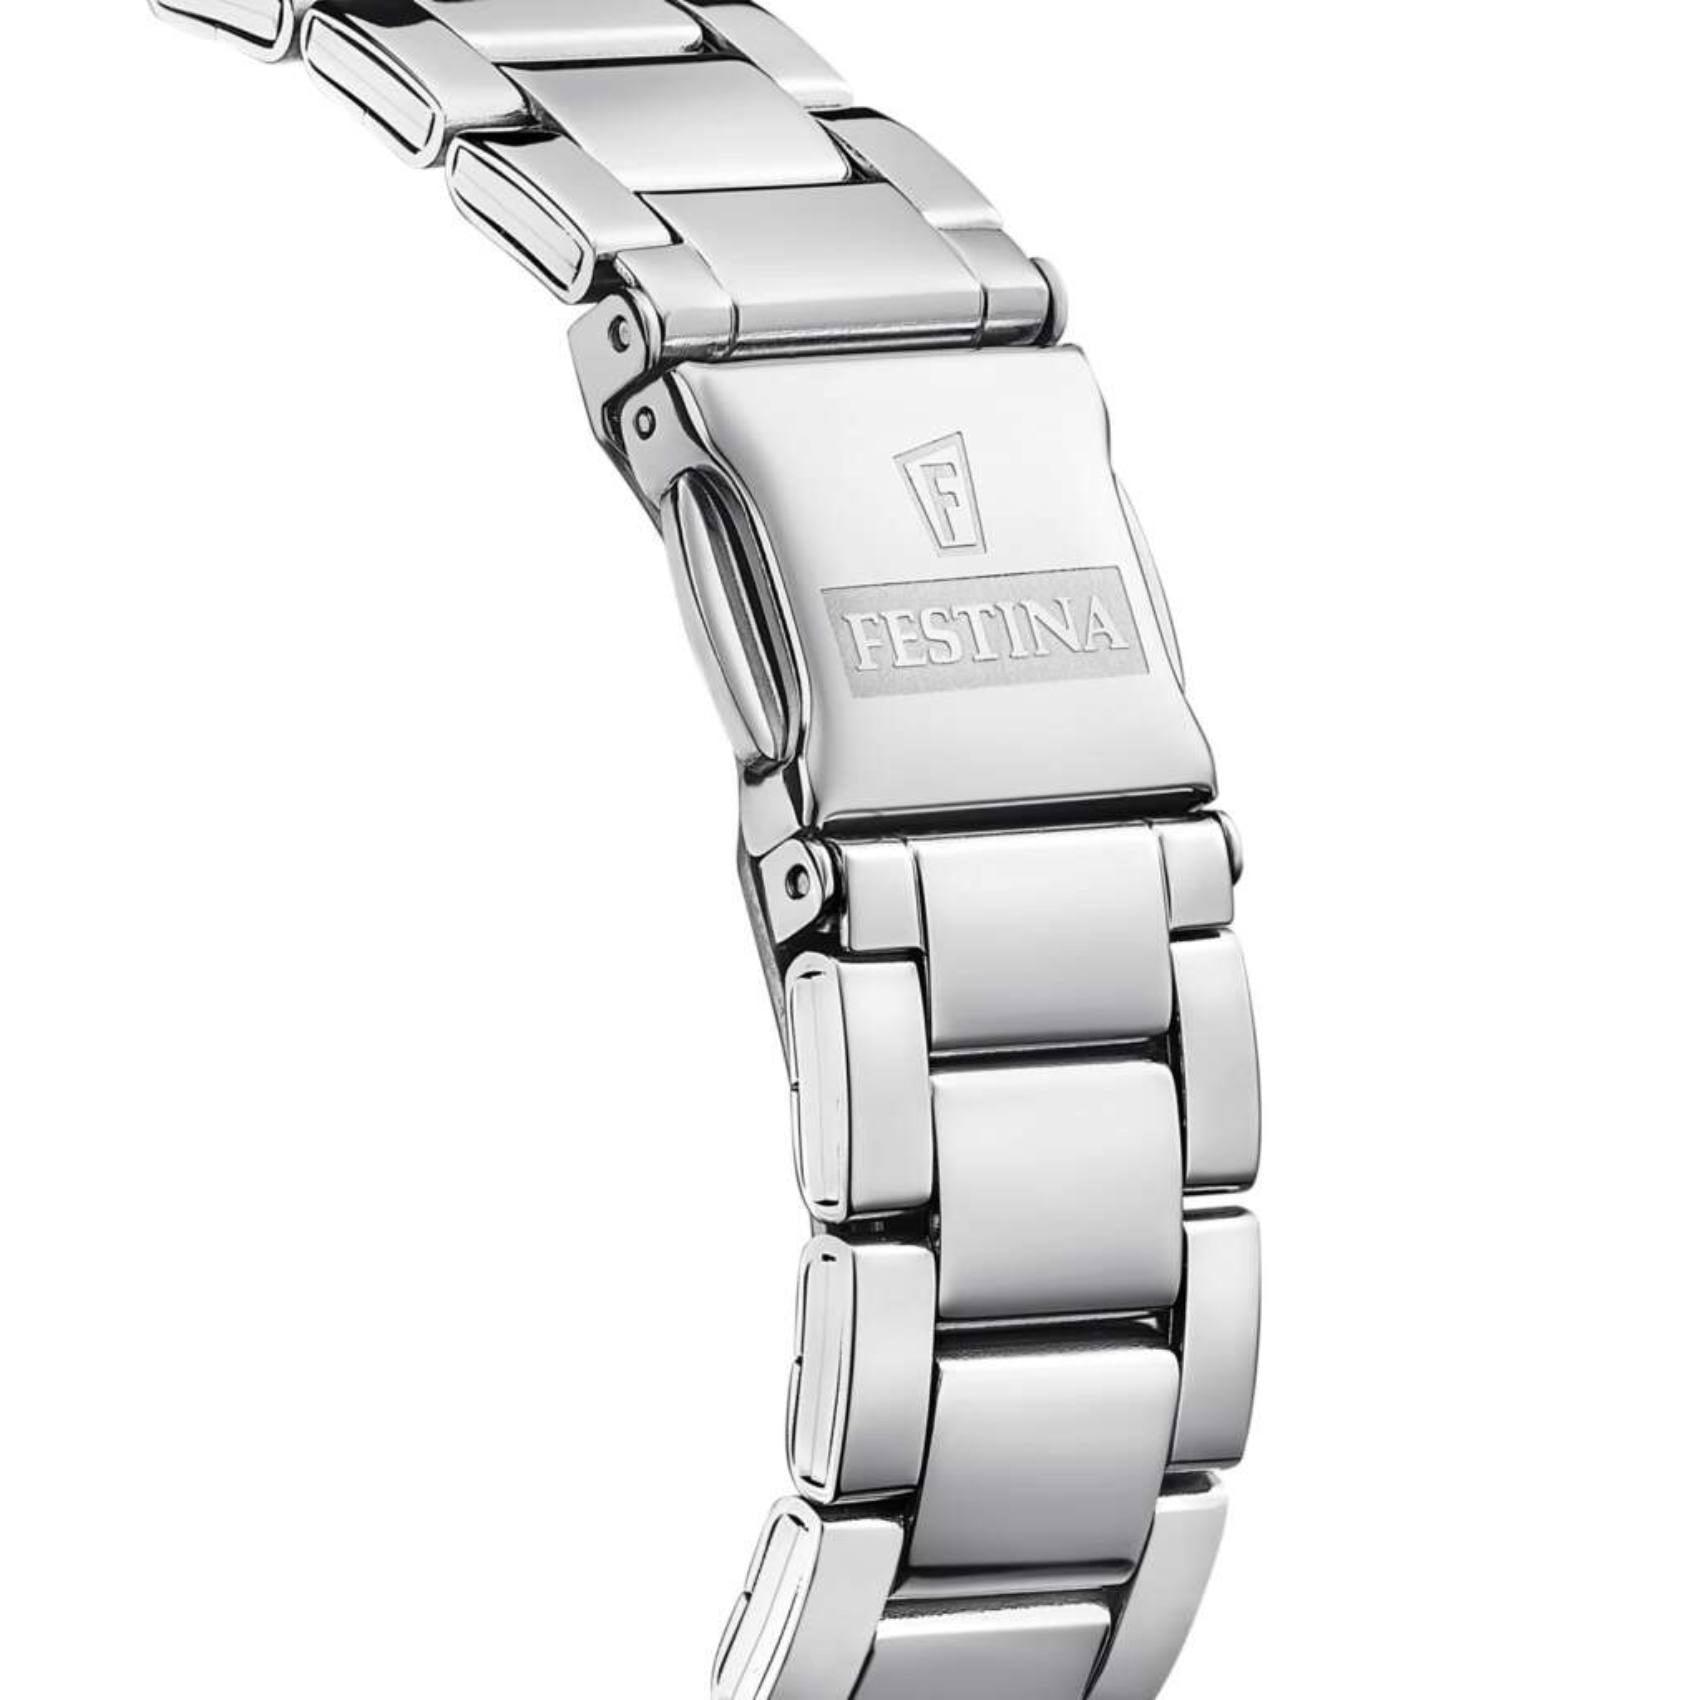 Γυναικείο ρολόι Festina Alegria Violet F20622/F με ασημί μπρασελέ, μωβ καντραν, μηχανισμό μπαταρίας, στρογγυλό στεφάνι με διάμετρο 36,8mm, αδιάβροχο στις 5ΑΤΜ-50Μ.